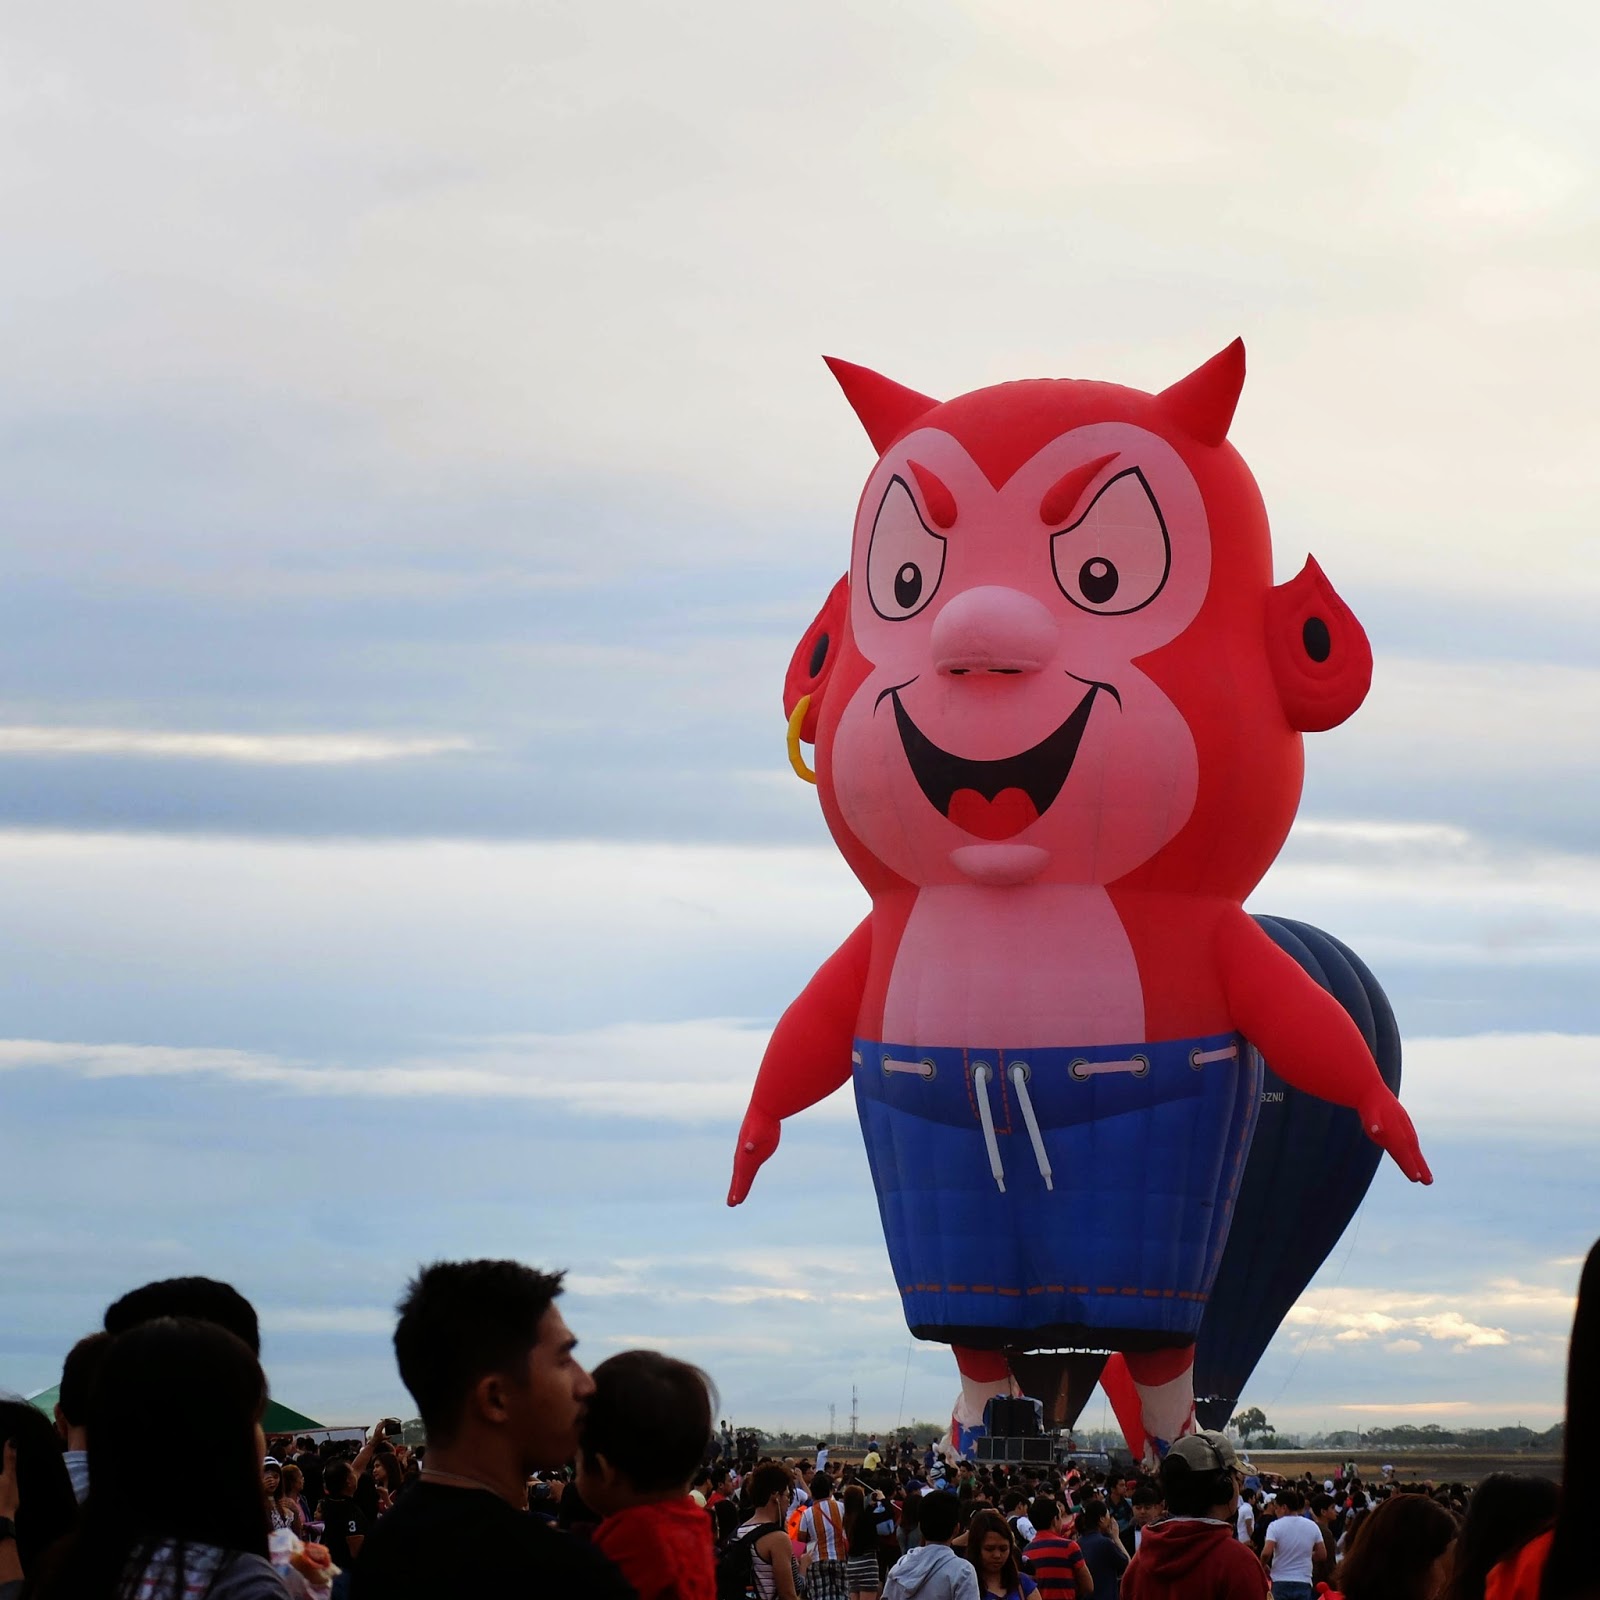 19th Hot Air Balloon Fiesta